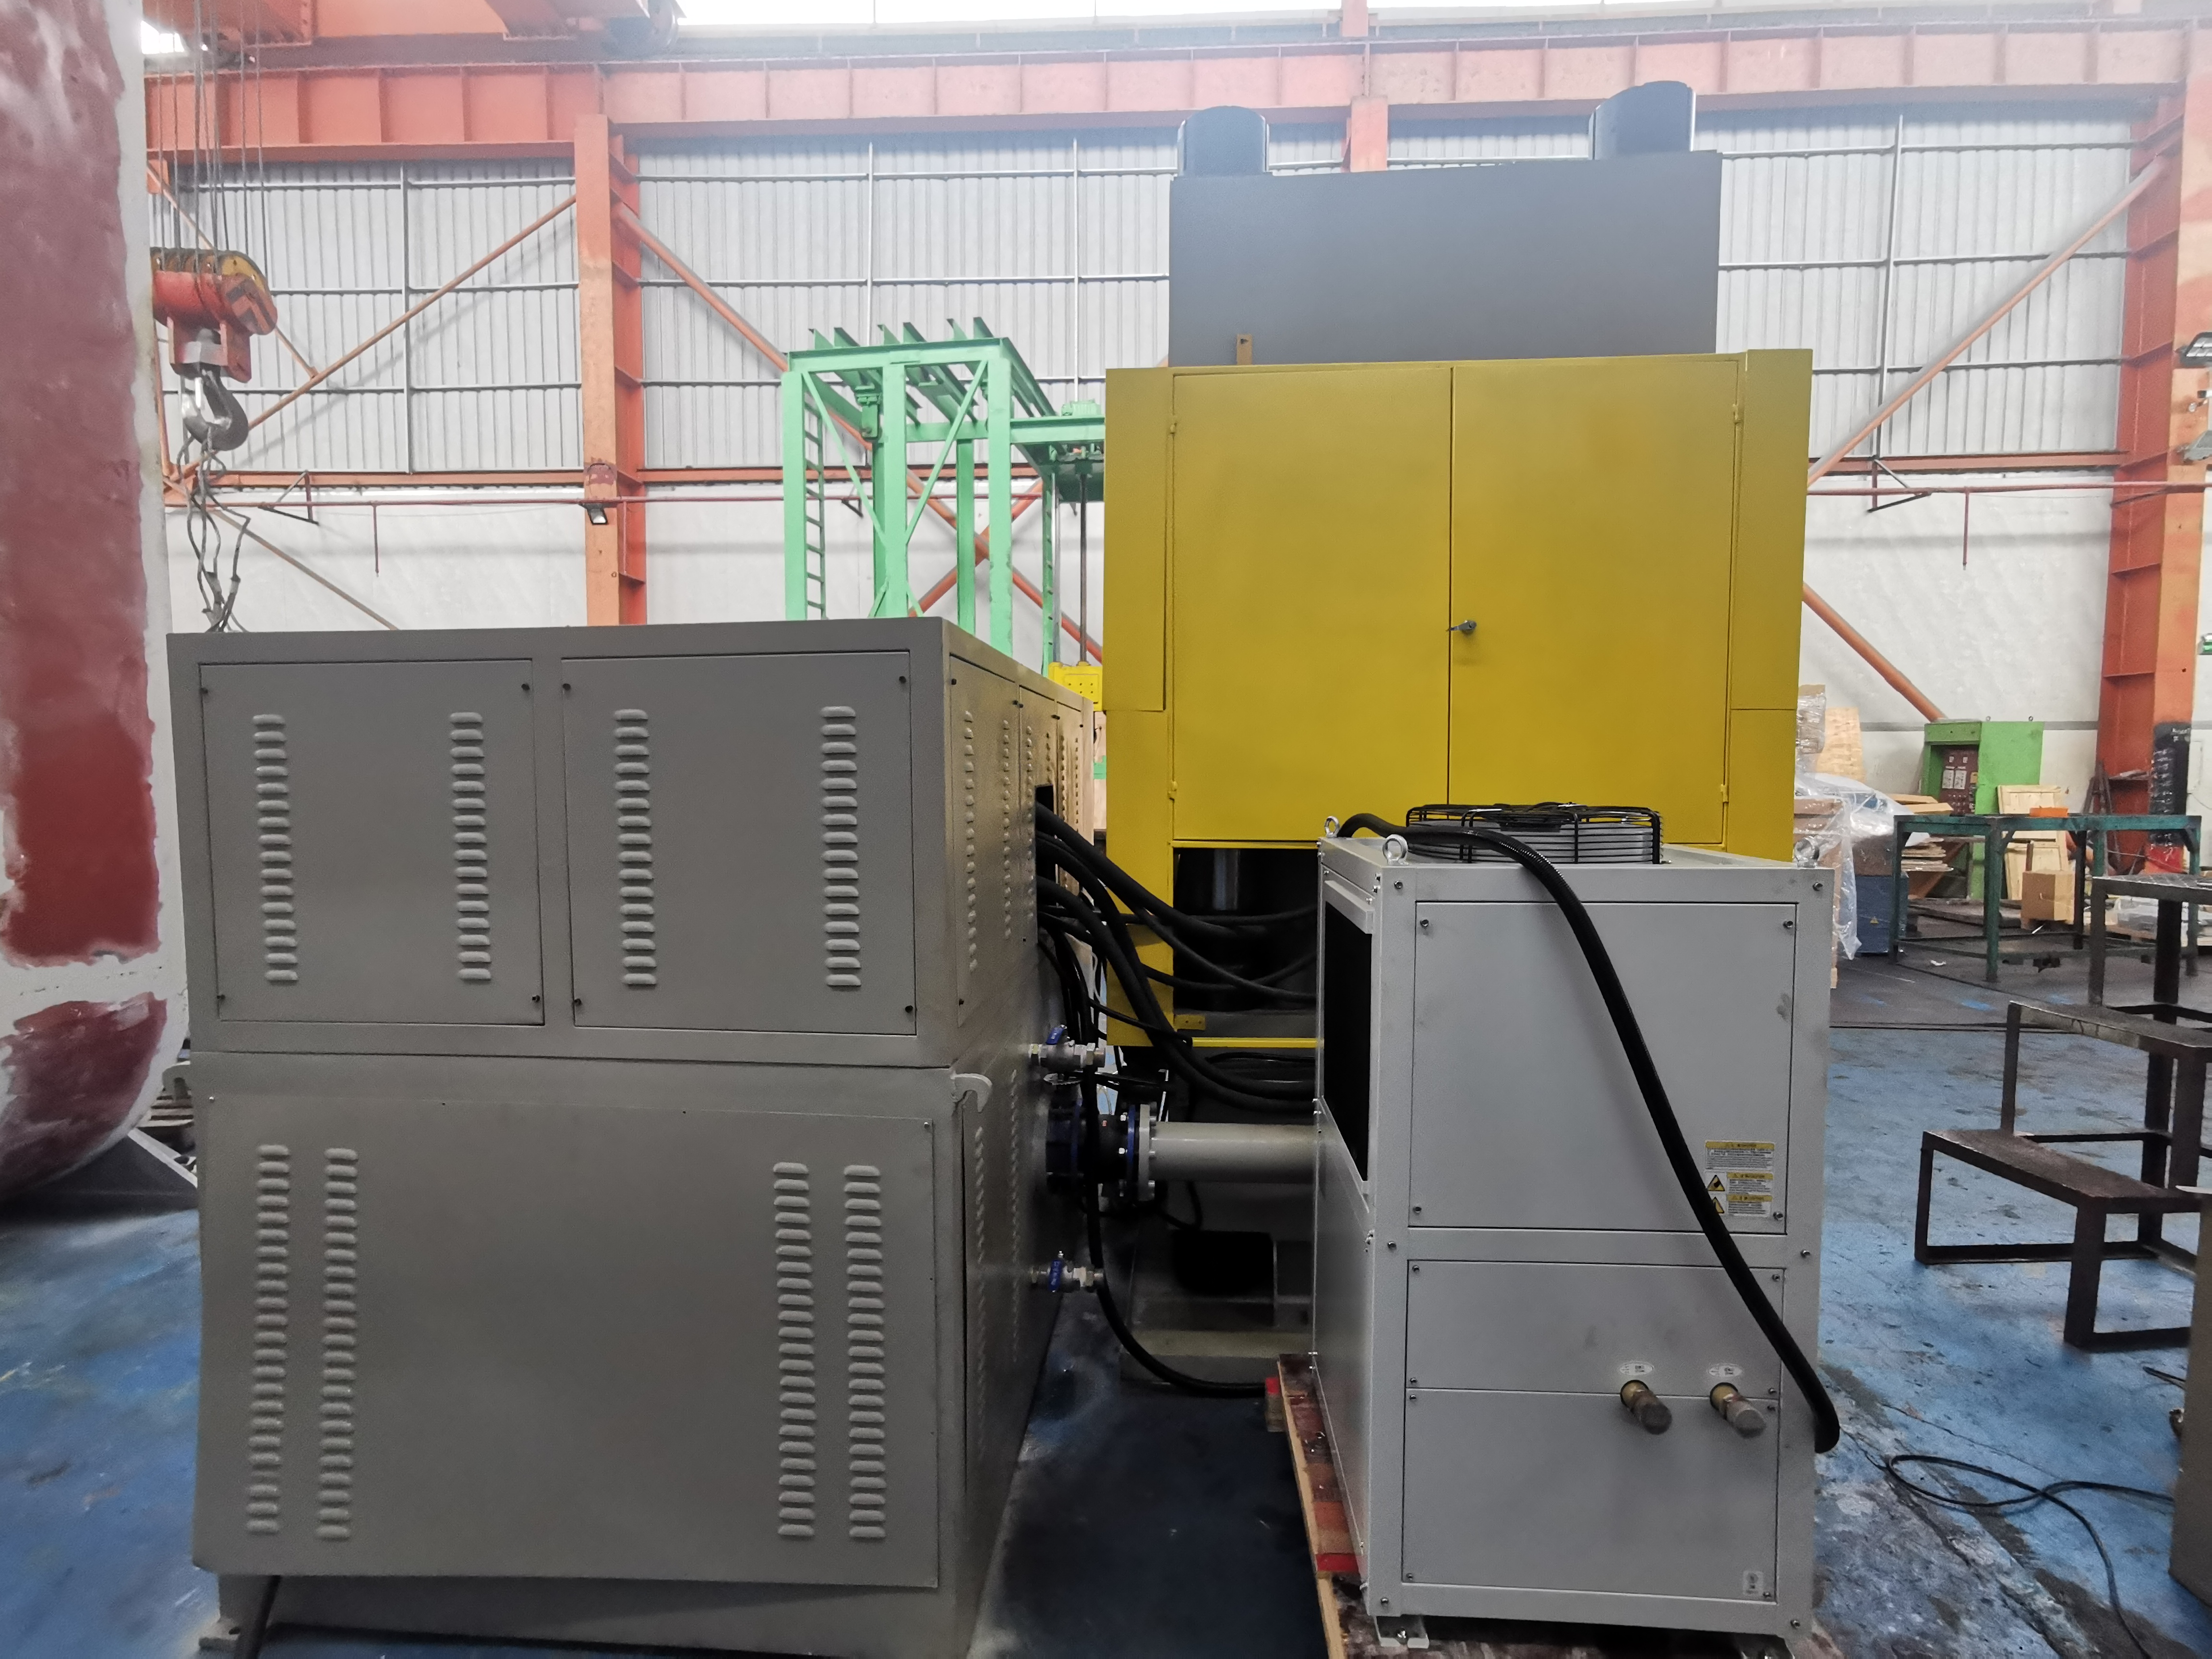 YSM-1000BS precision servo CNC hydraulic press